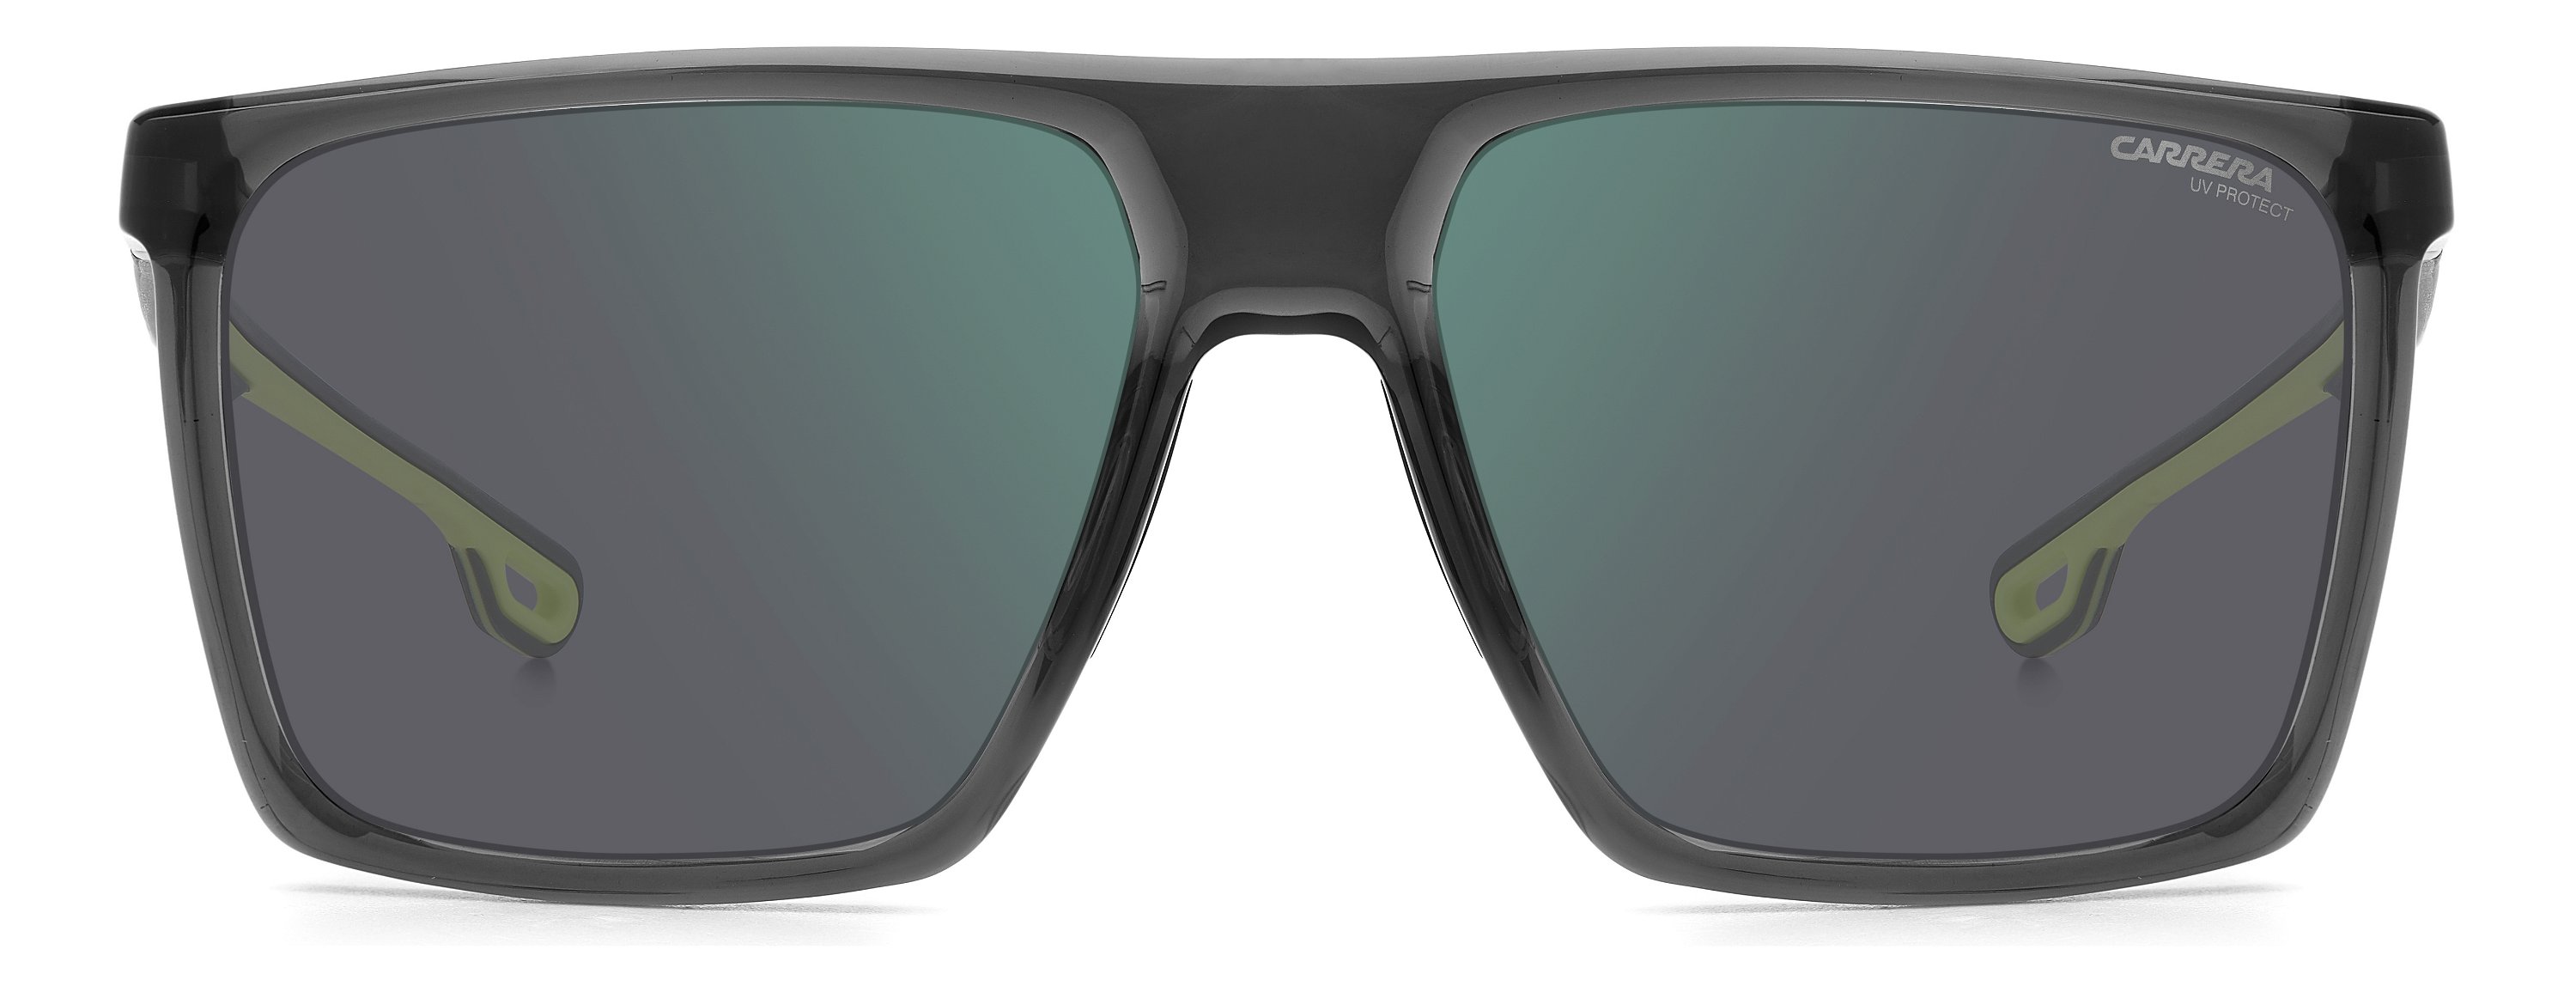 Das Bild zeigt die Sonnenbrille 4019_S 0UV von der Marke Carrera in  grau.